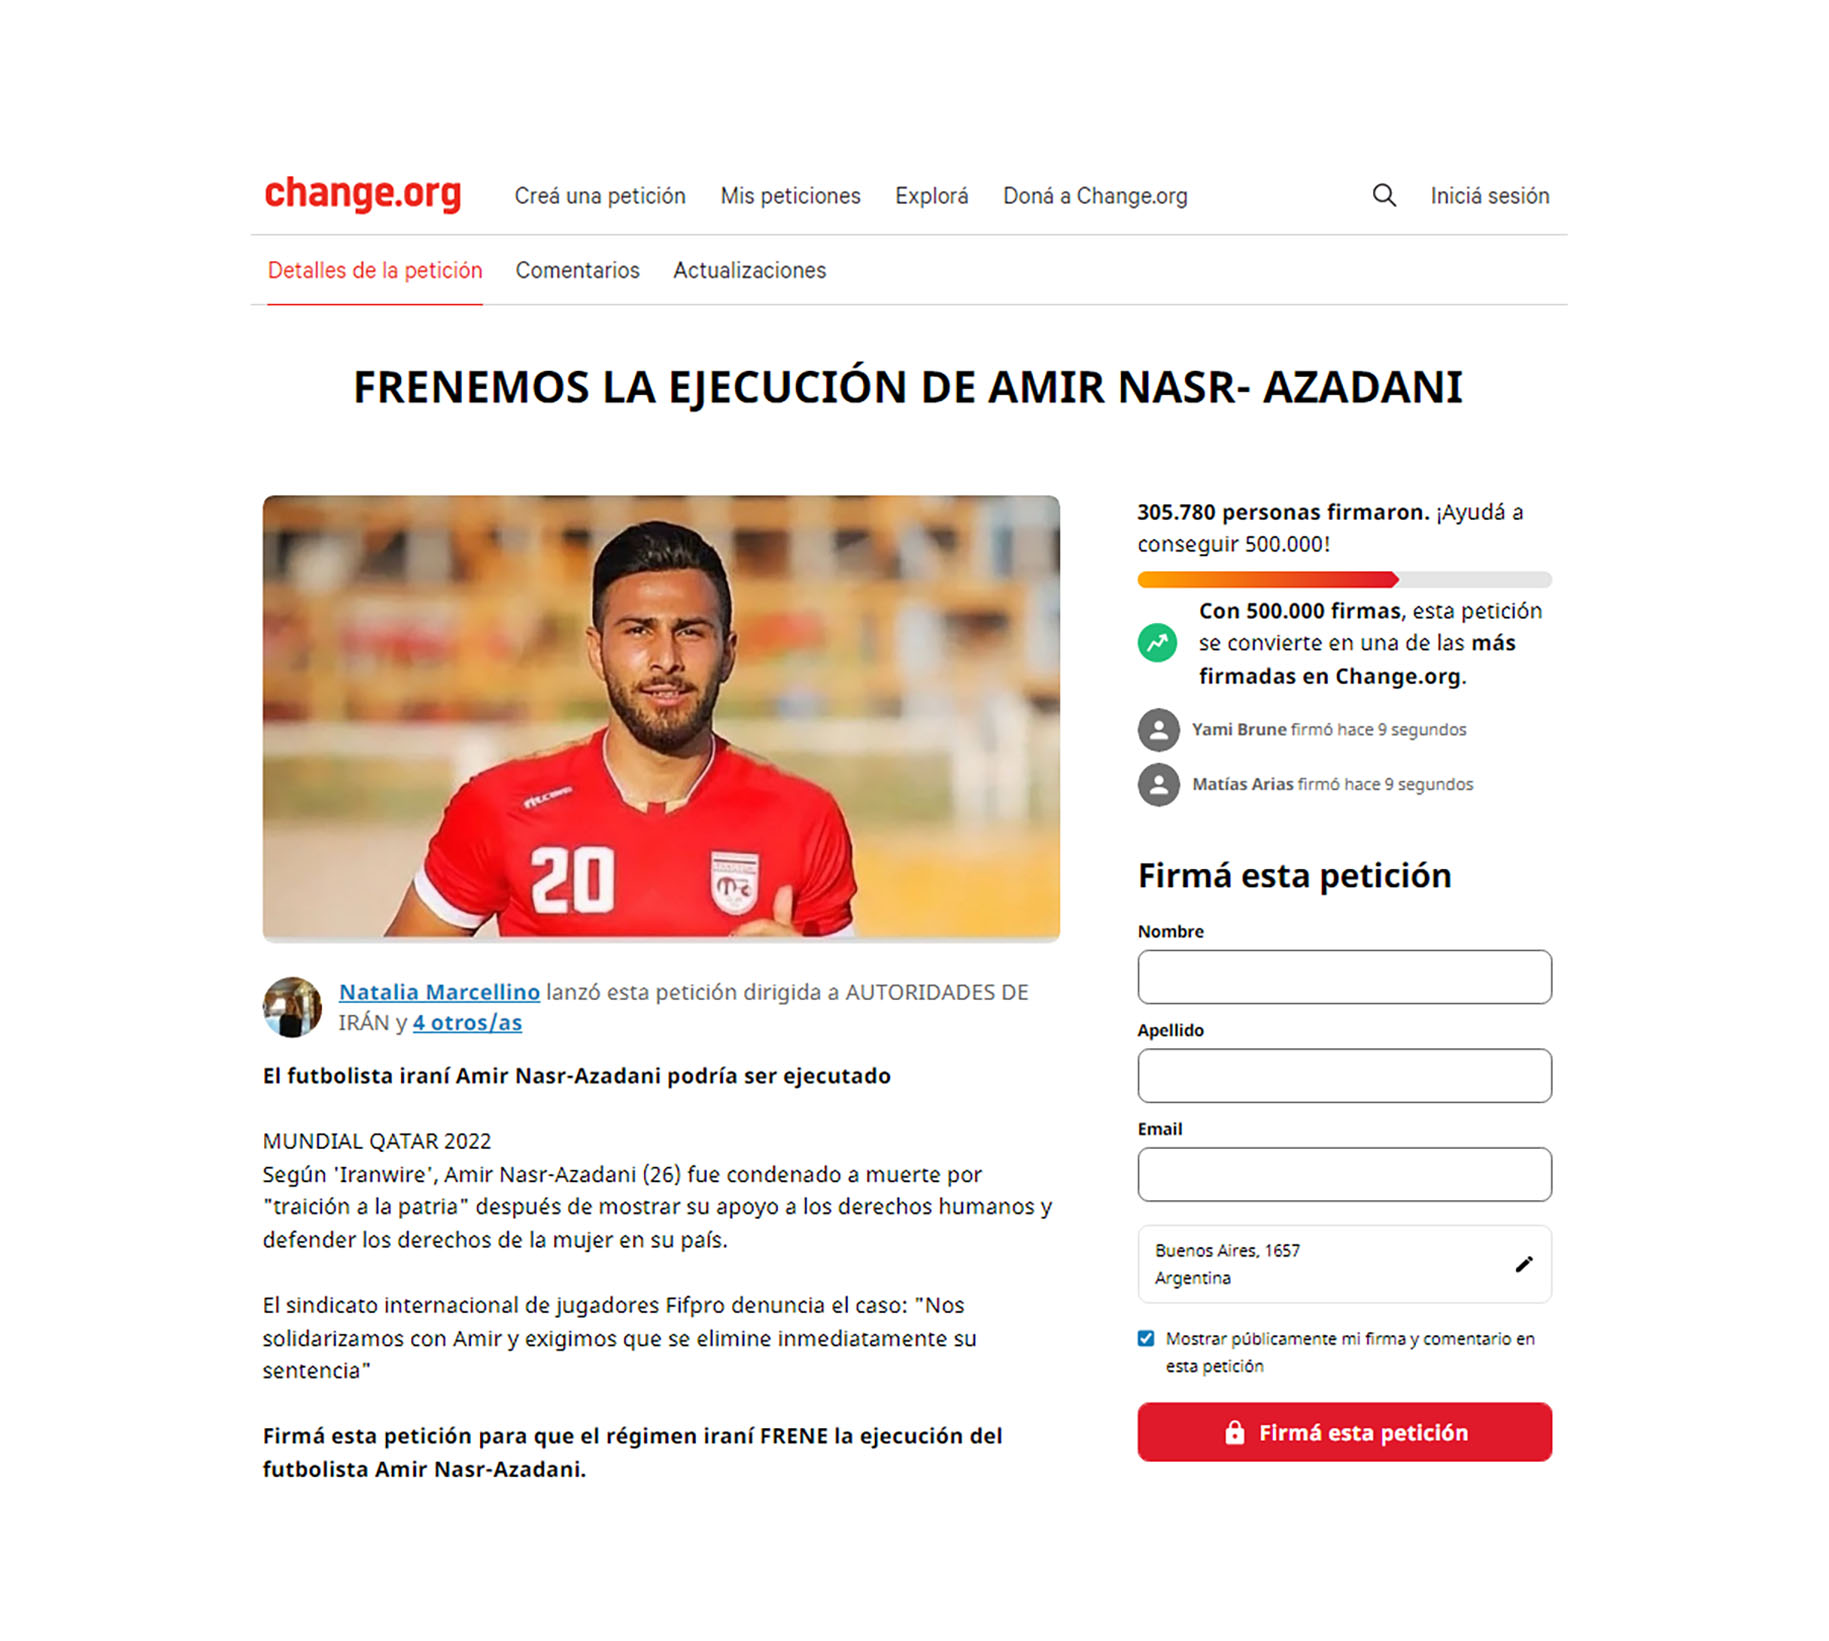 A favor de la anulación de la pena capital contra Amir, el futbolista del Iranjaván, se han alzado miles de voluntades individuales